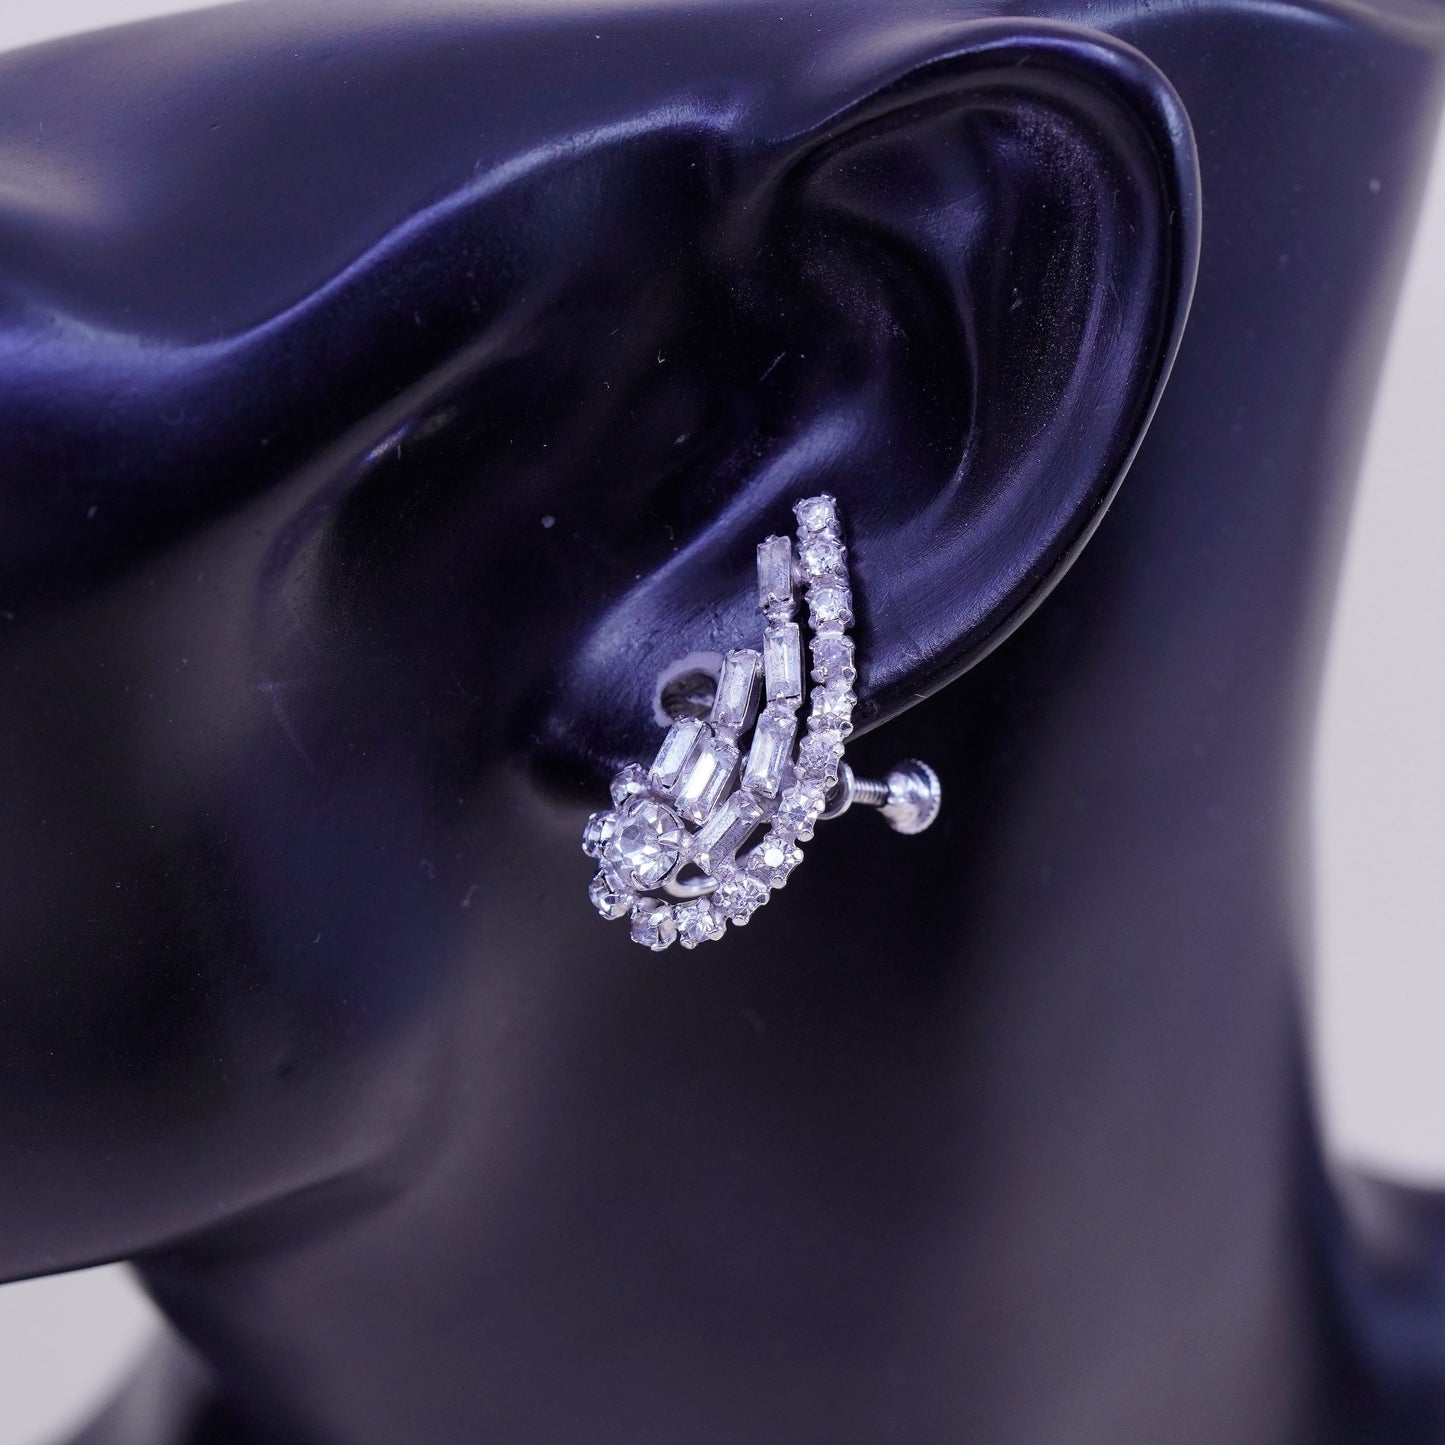 1950s sterling 925 silver earrings swirly screw back earrings with rhinestone